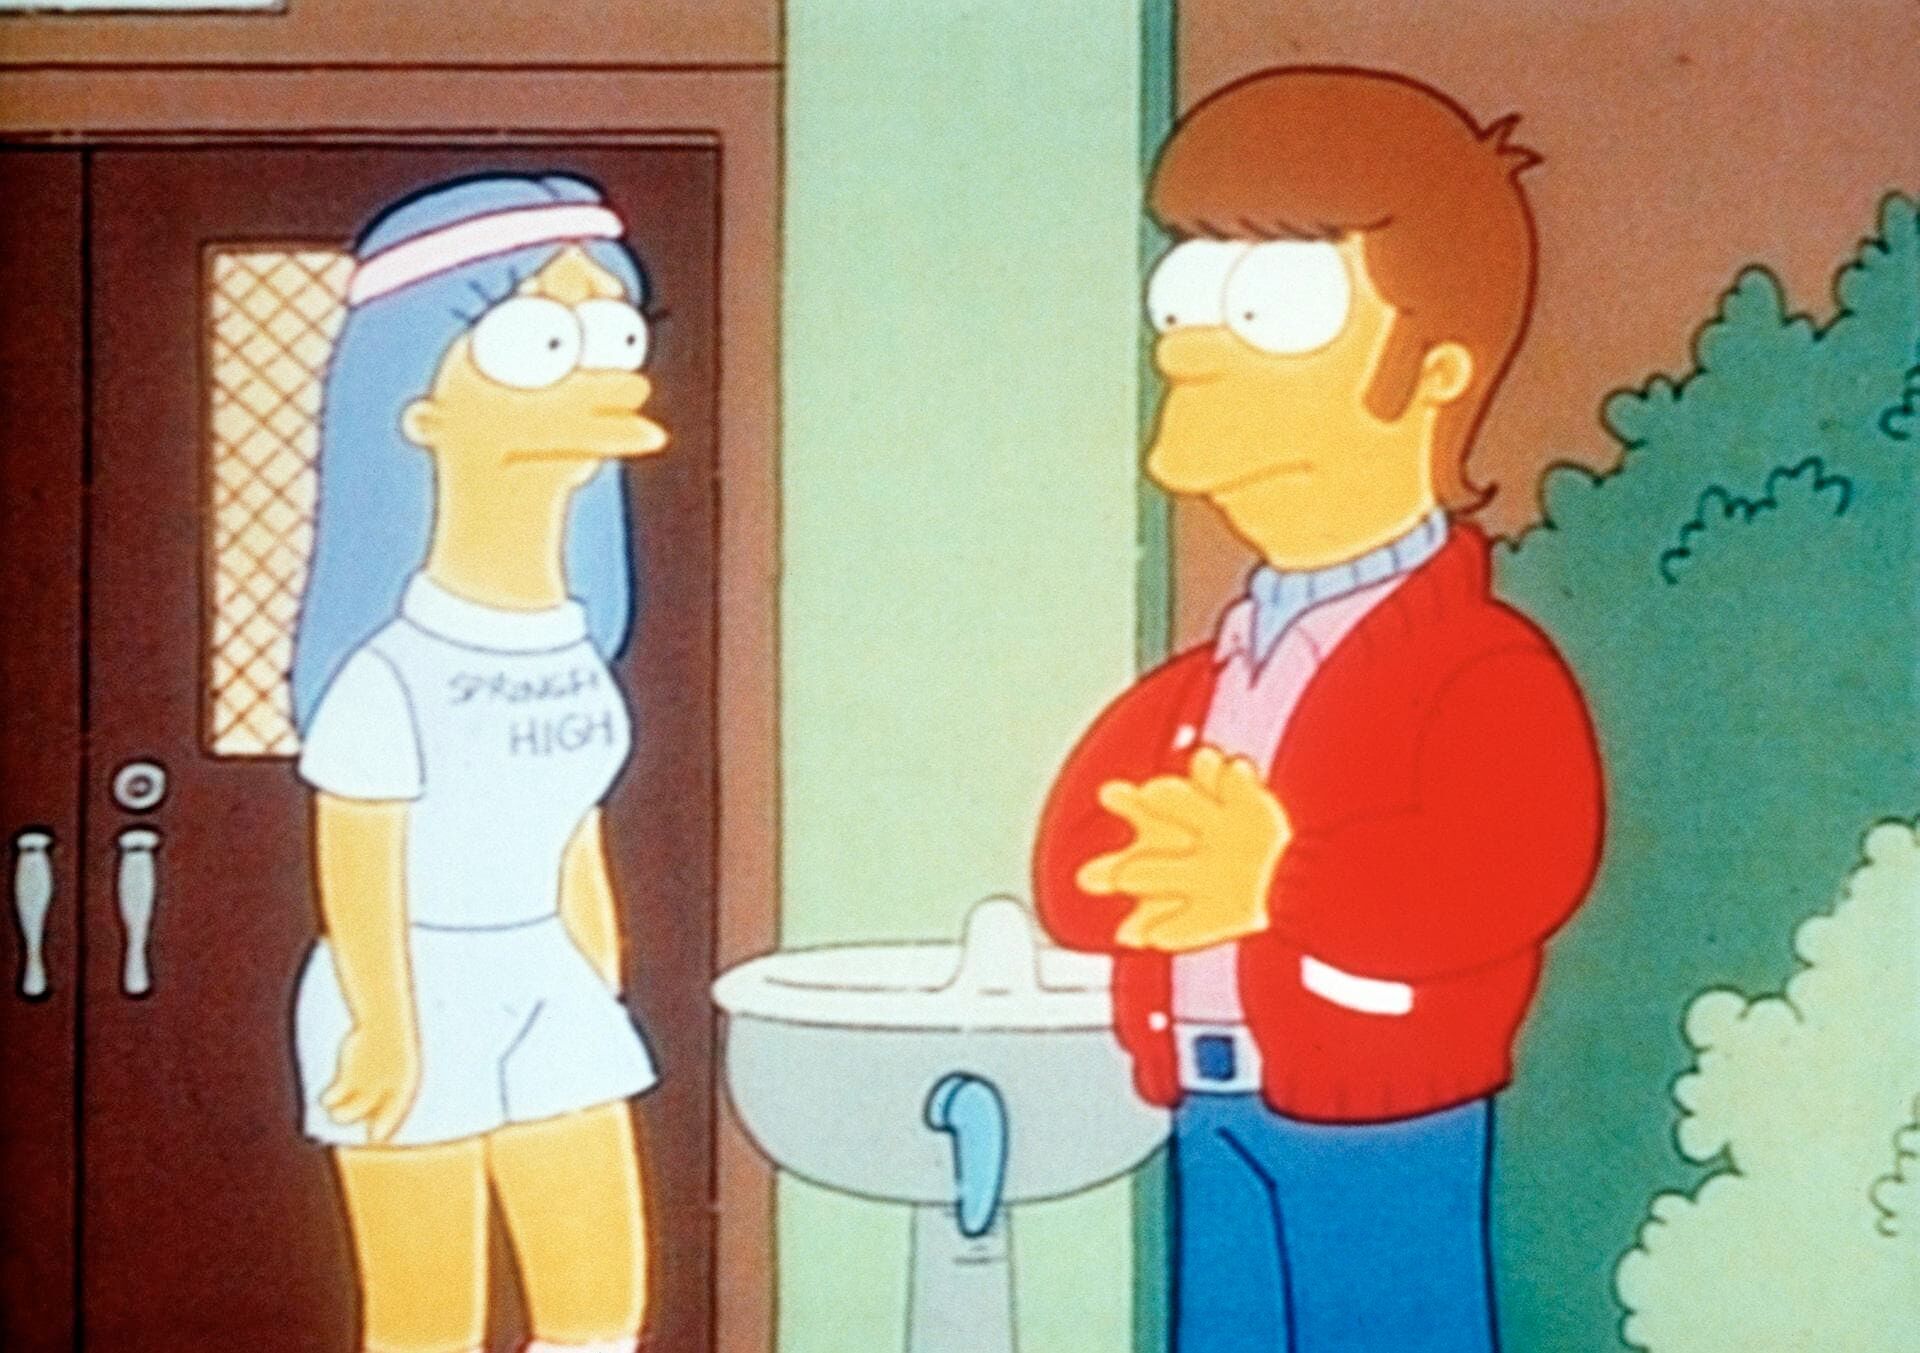 Les Simpson - Il était une fois Homer et Marge